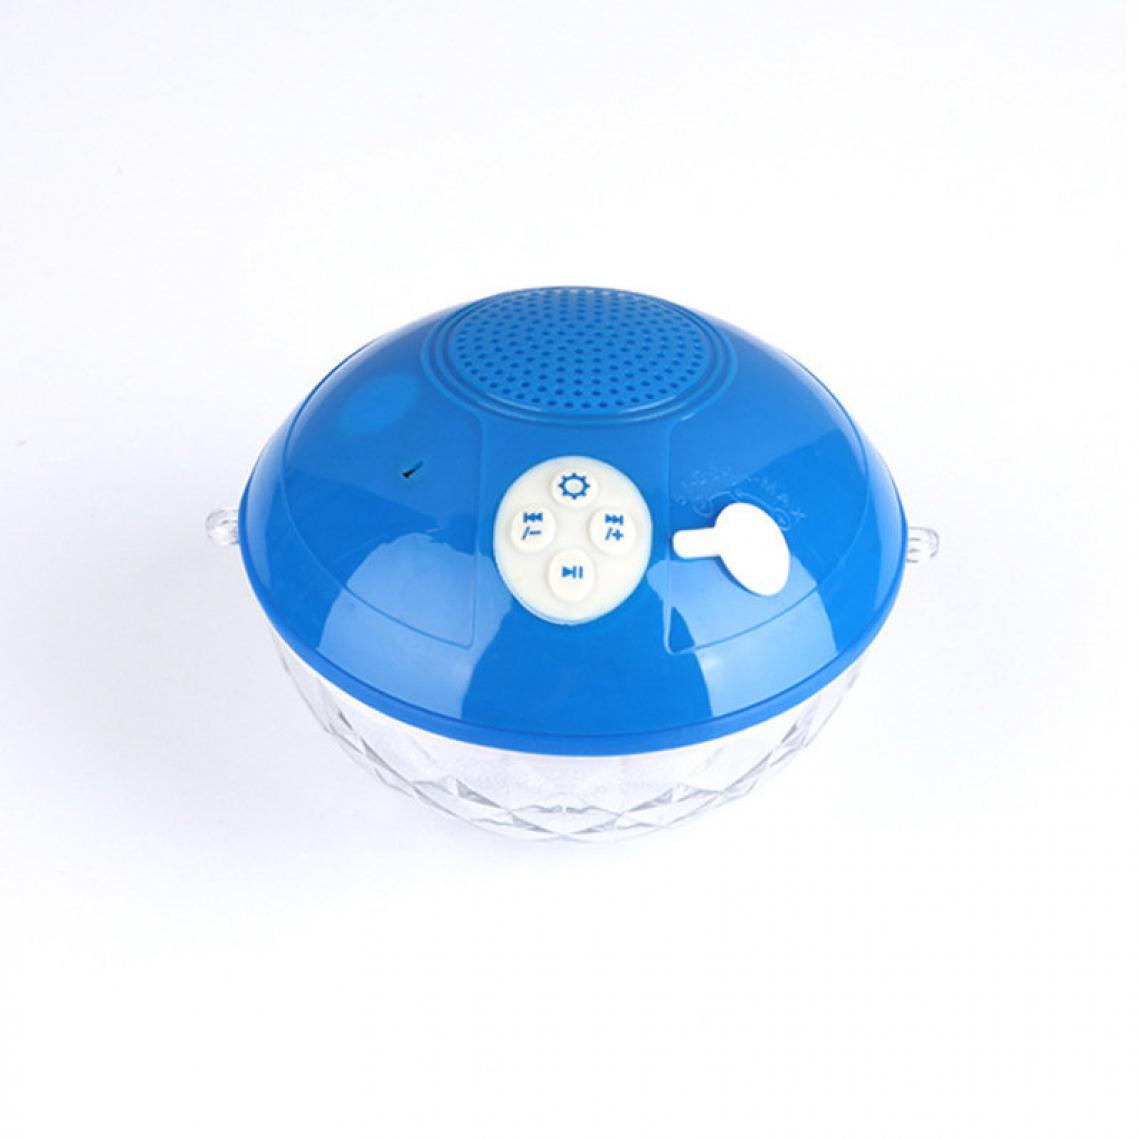 Chrono - Haut-parleur Bluetooth portable avec lumières colorées, haut-parleur de douche flottant Haut-parleur sans fil bluetooth4.2 IPX7 étanche, microphone intégré boîte à musique stéréo cristalline(Bleu) - Enceintes Hifi